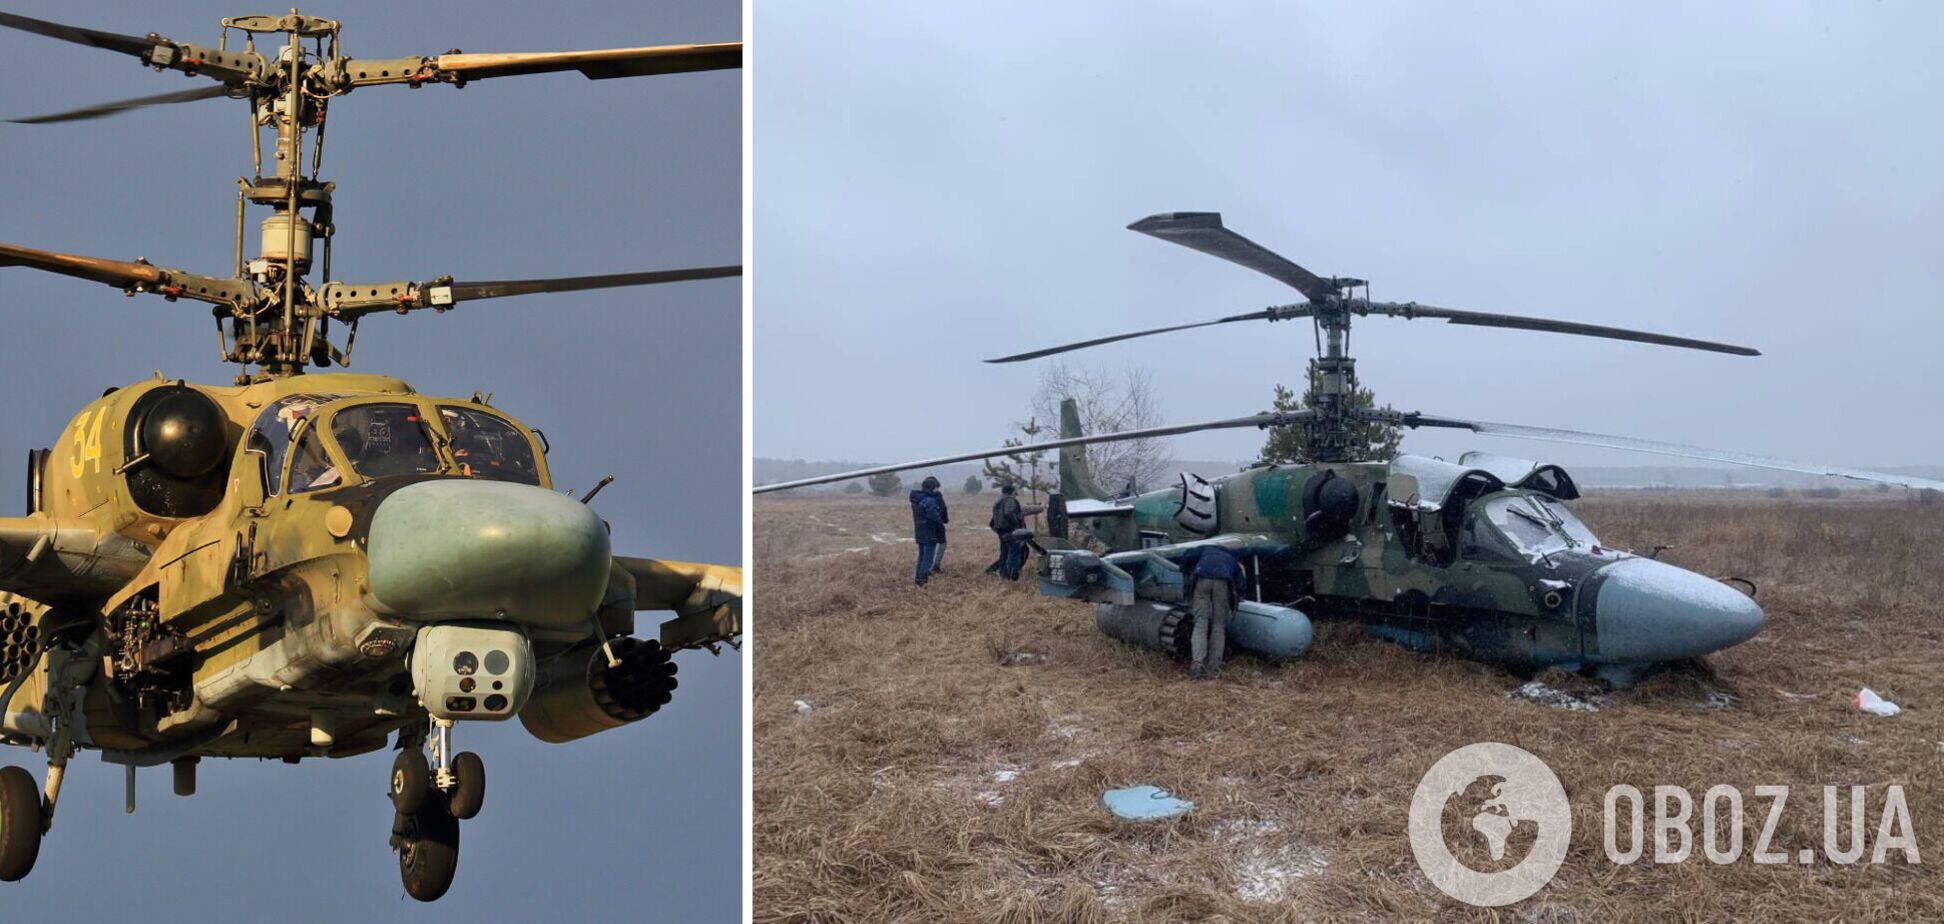 ВСУ в Донецкой области сбили российский вертолет Ка-52 стоимостью около $16 млн